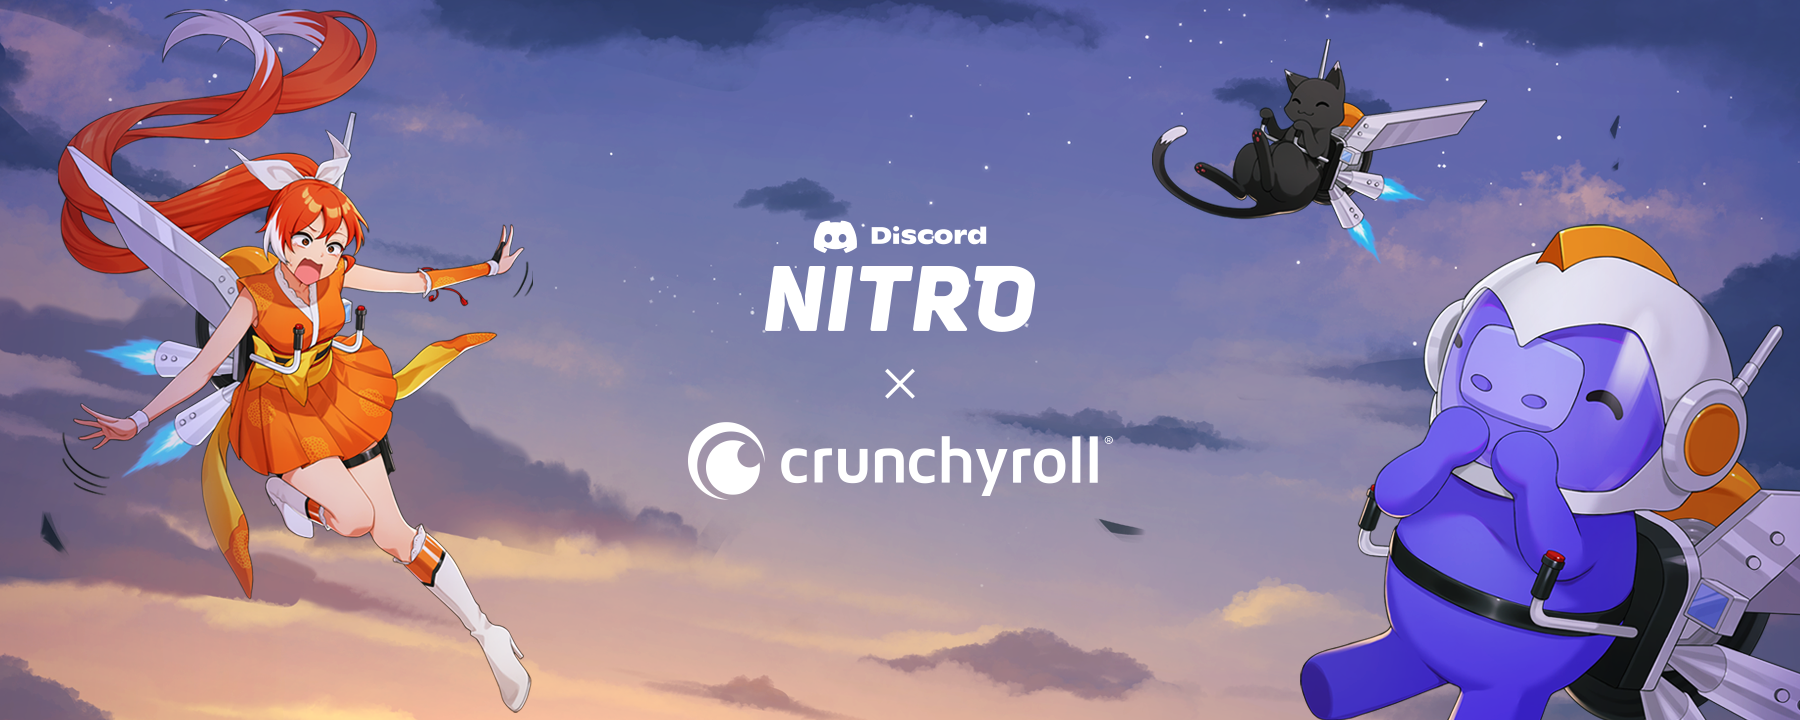 crunchyroll discord stream